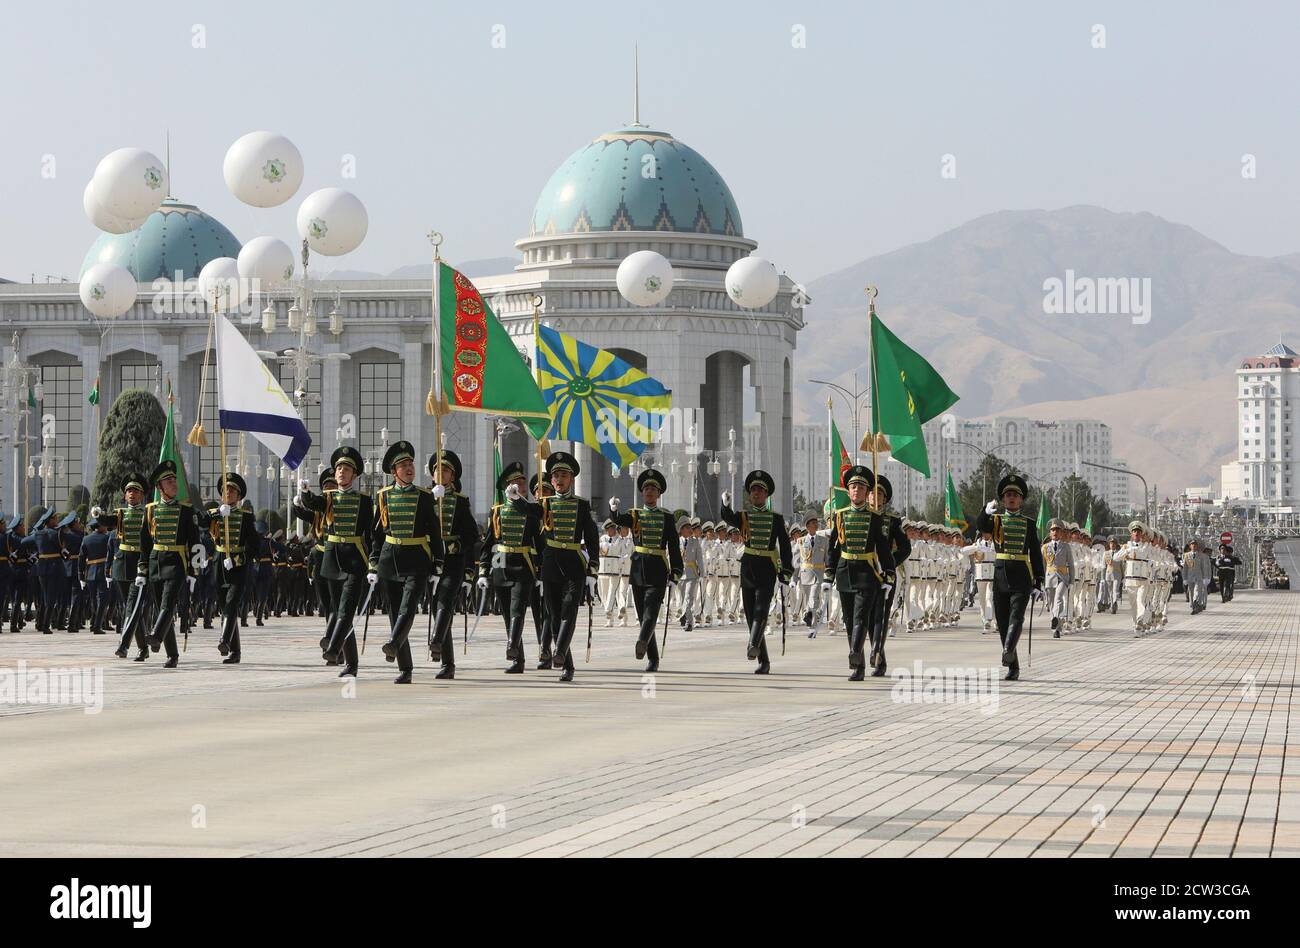 Turkmenische Dienstmitglieder nehmen an einer Parade zum Unabhängigkeitstag in Aschgabat, Turkmenistan, am 27. September 2020 Teil. REUTERS/Wjatscheslaw Sarkisyan Stockfoto